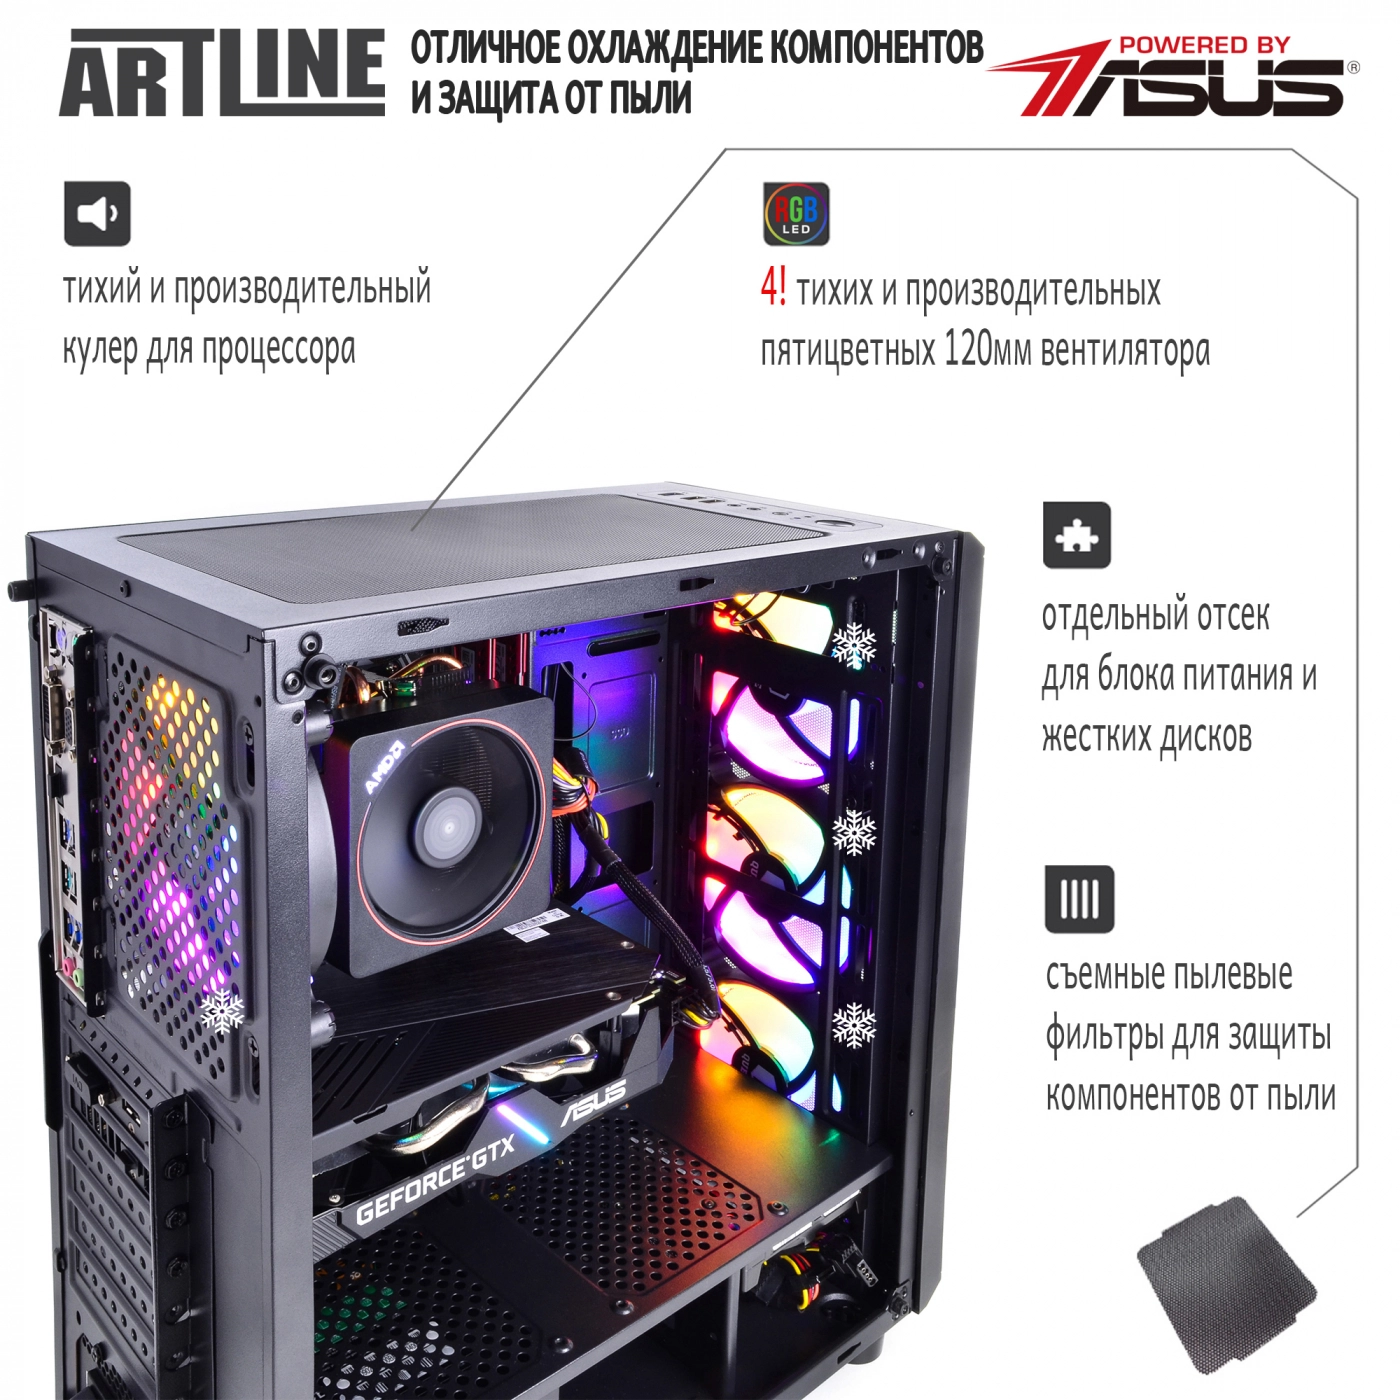 Купить Компьютер ARTLINE Gaming X43v09 - фото 2